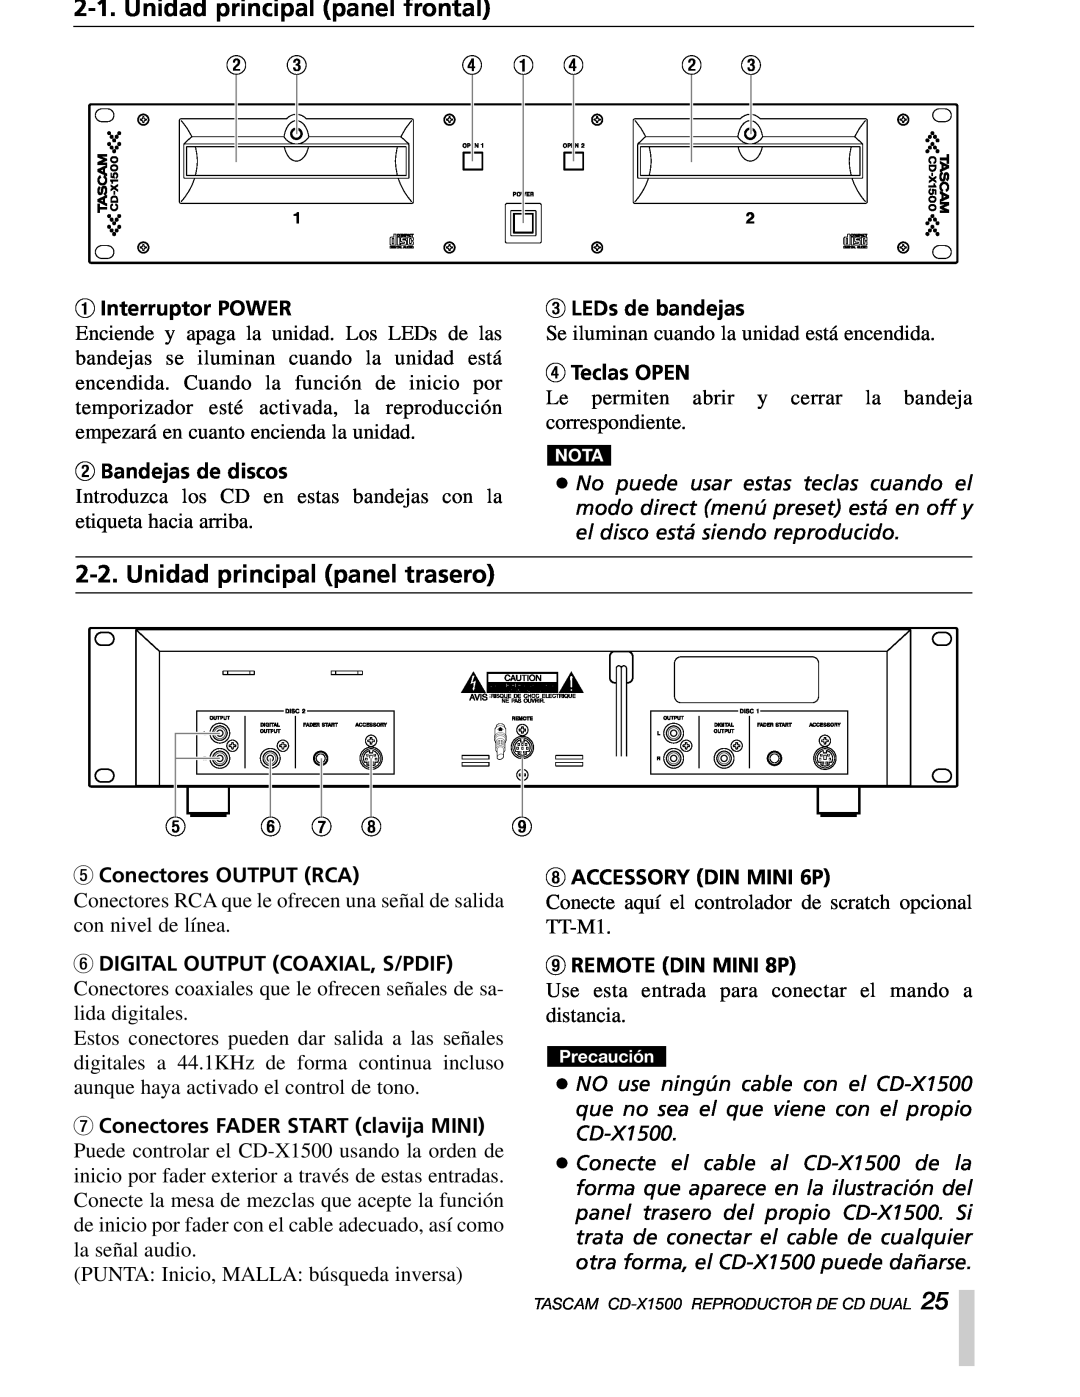 Sony CD-X1500 Unidad principal panel frontal, Unidad principal panel trasero, 1Interruptor POWER, 2Bandejas de discos 